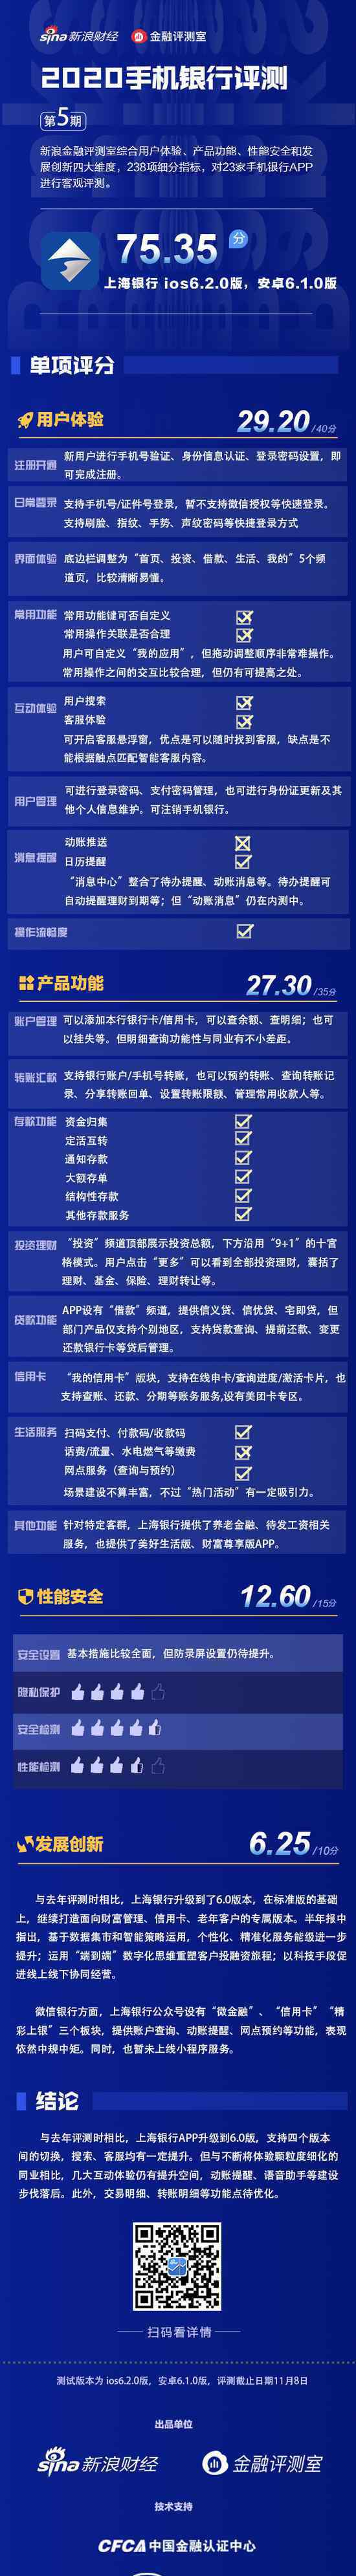 手机银行app 上海银行APP仍需下苦功：动账提醒缺失 部分交互待提升